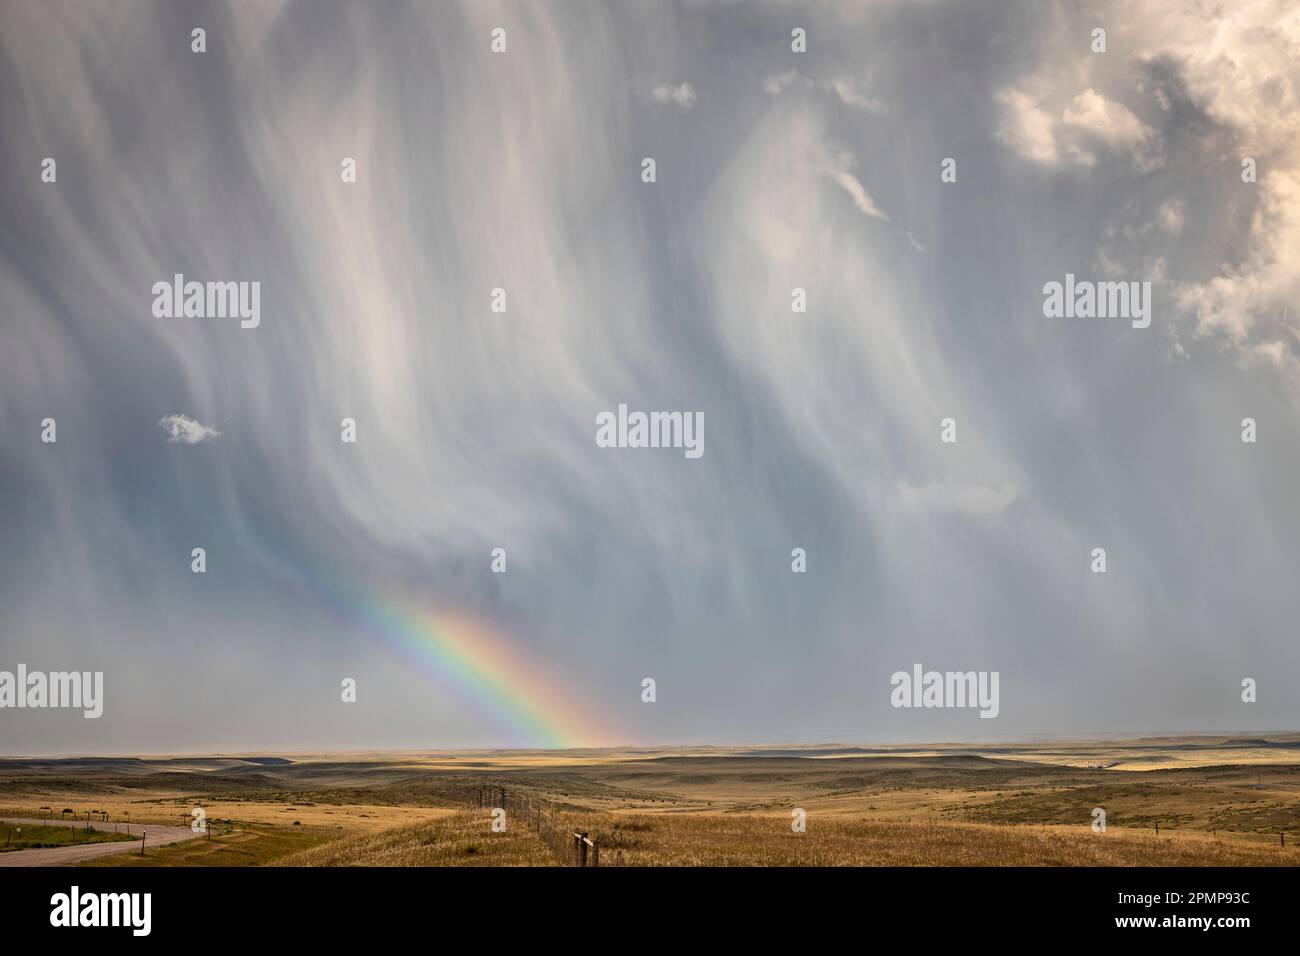 Grande nuvola di tempesta testurizzata che scarica pioggia e grandine ma condivide un meraviglioso arcobaleno vicino a Chugwater, Wyoming, Stati Uniti d'America Foto Stock